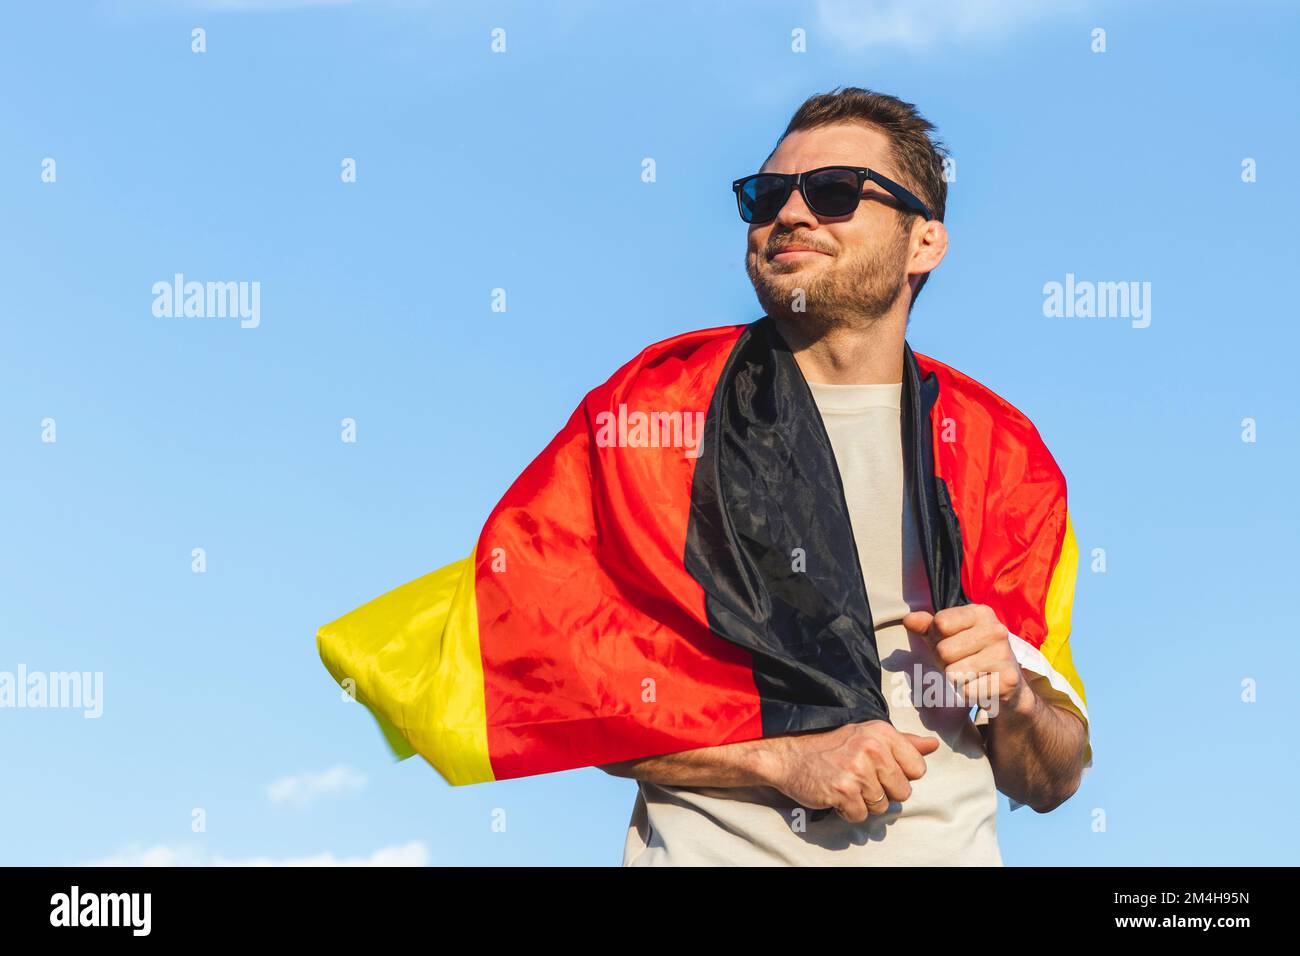 Flagge Deutschlands auf den Schultern des Mannes in Sonnenbrille gegen  blauen Himmel Stockfotografie - Alamy